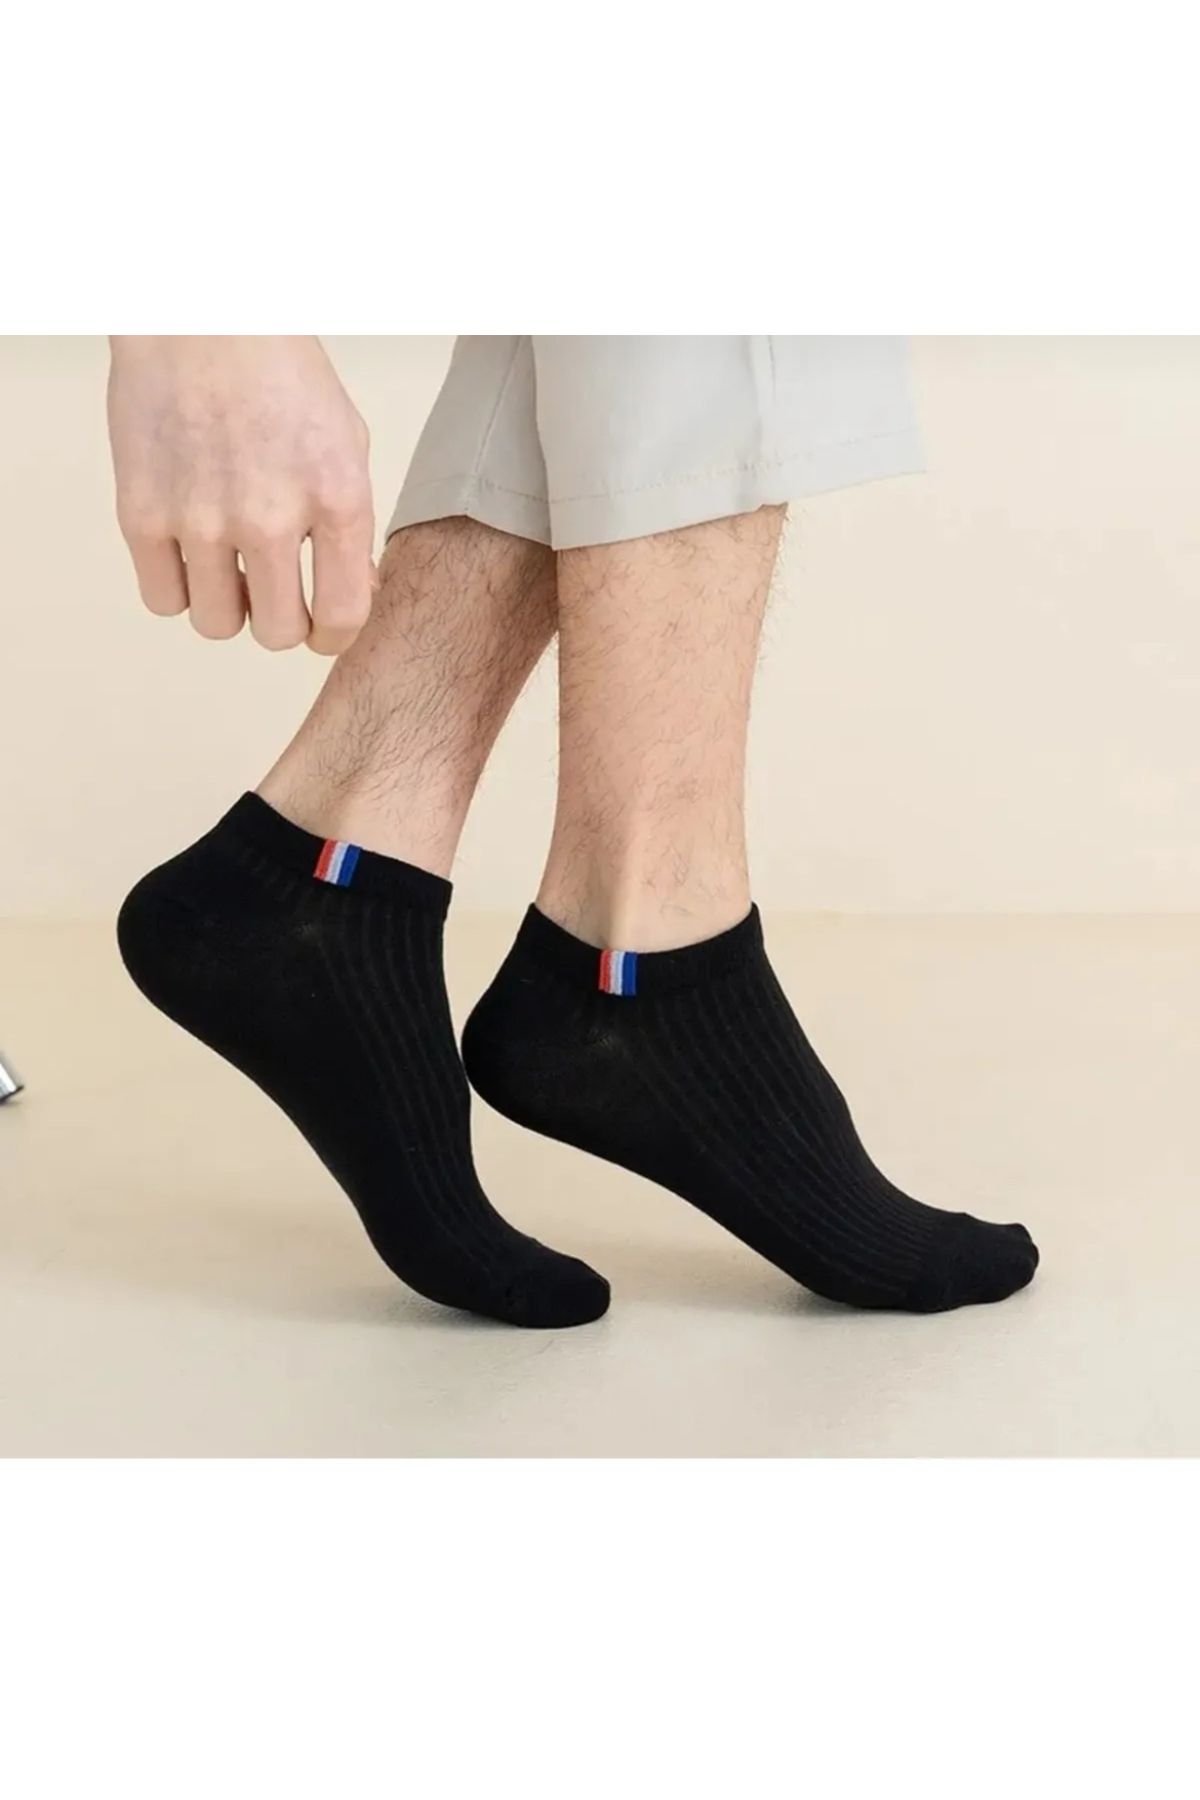 Önder 5 Li Erkek Patik Çorap Seti